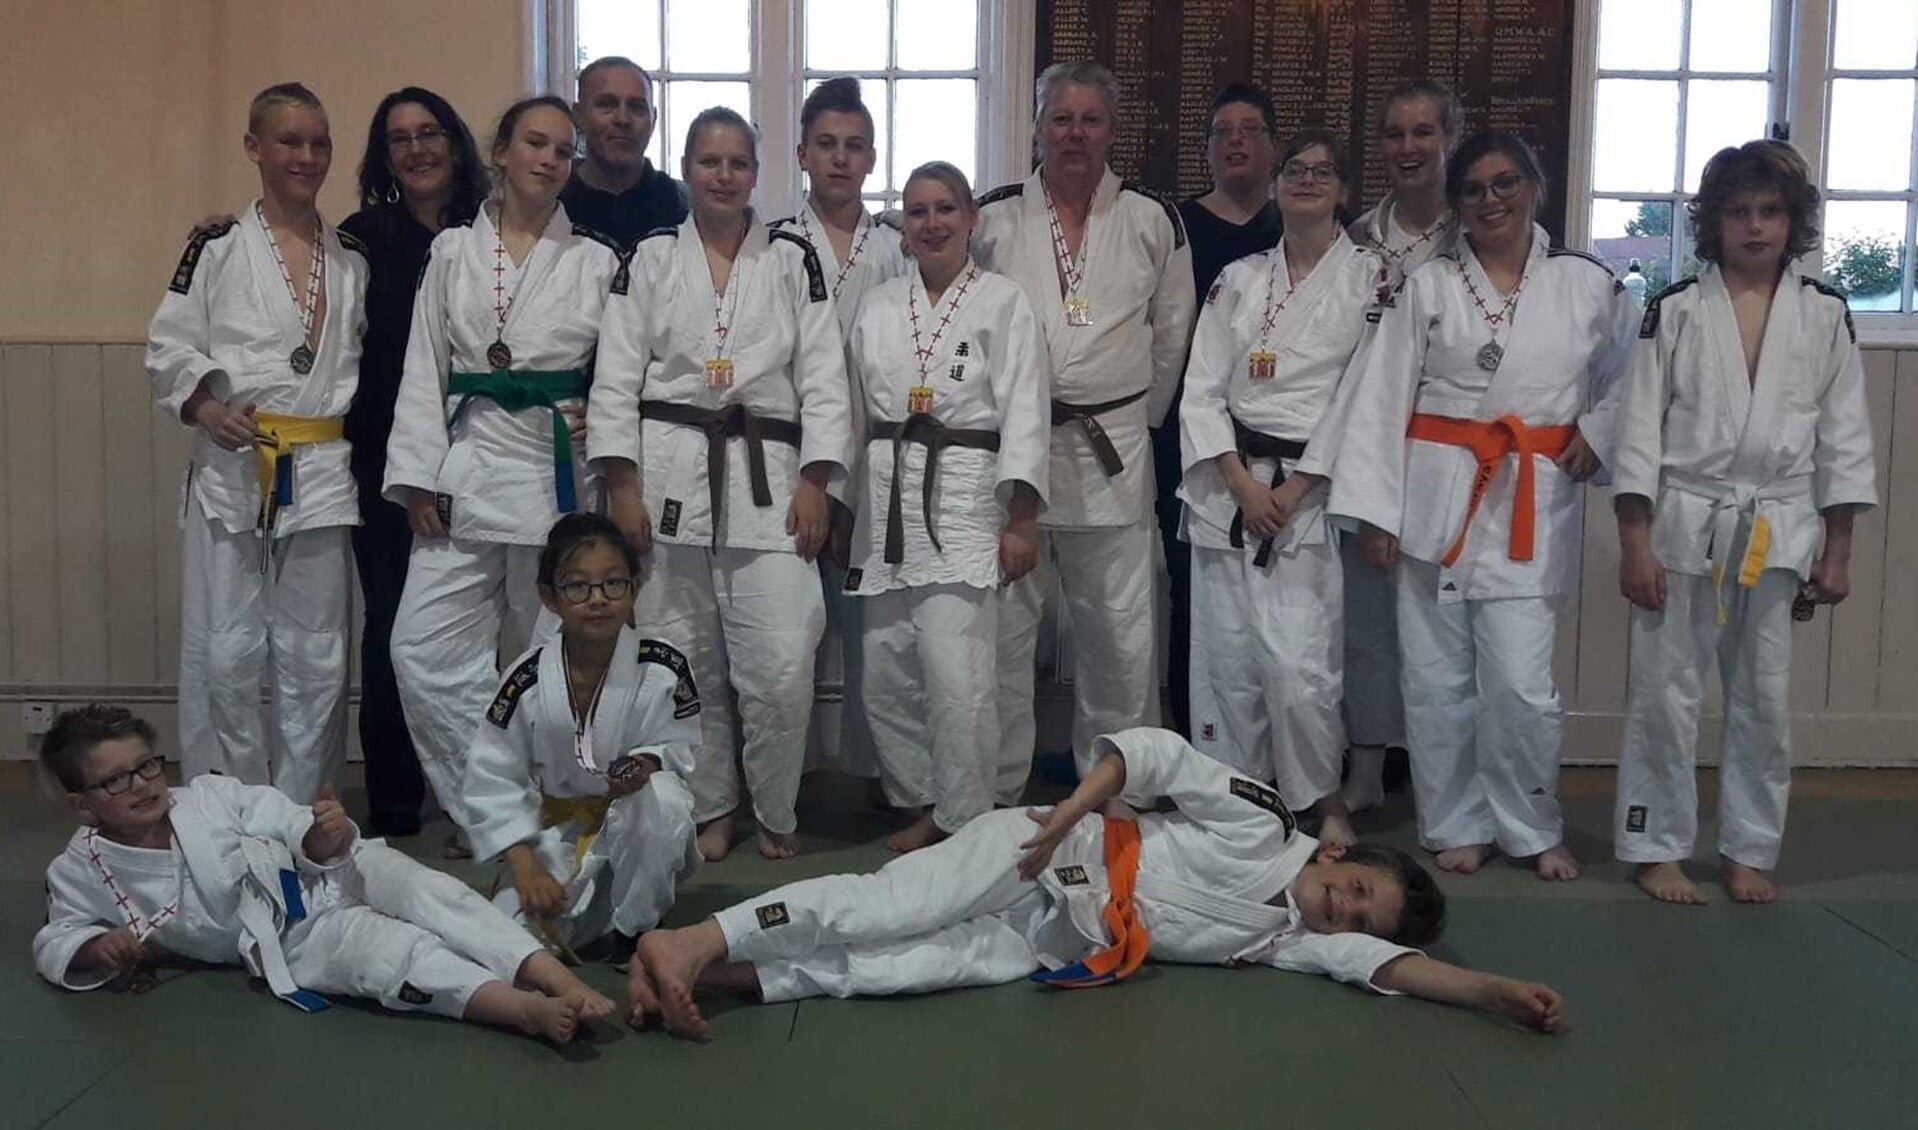 De judoka's van Judo Club Middelharnis behaalde een mooi succes in Engeland.